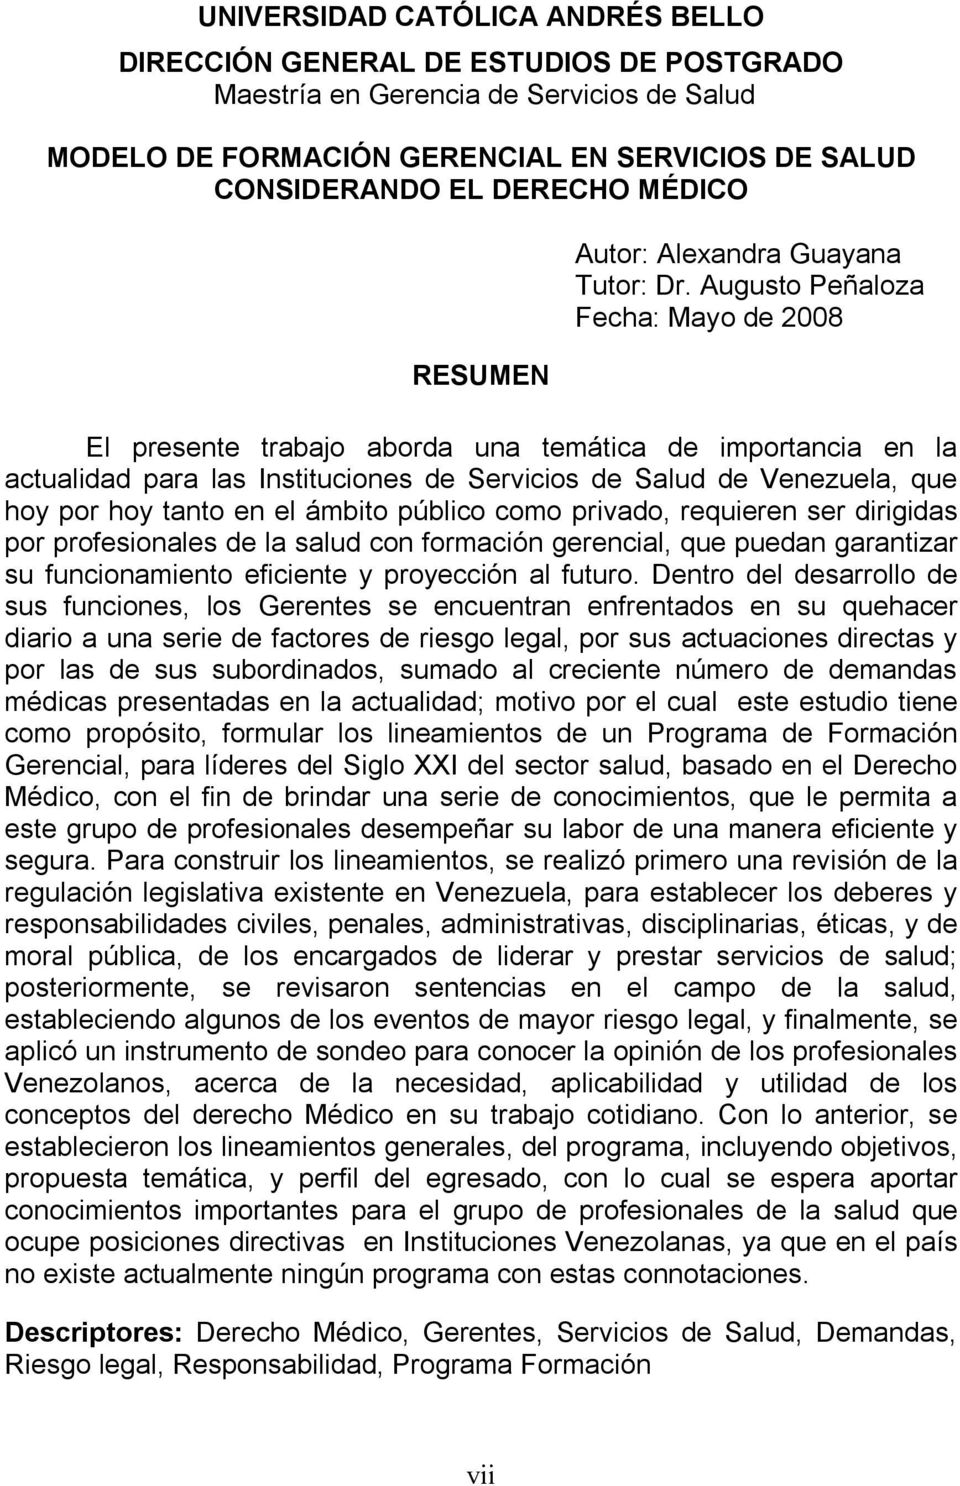 Augusto Peñaloza Fecha: Mayo de 2008 El presente trabajo aborda una temática de importancia en la actualidad para las Instituciones de Servicios de Salud de Venezuela, que hoy por hoy tanto en el